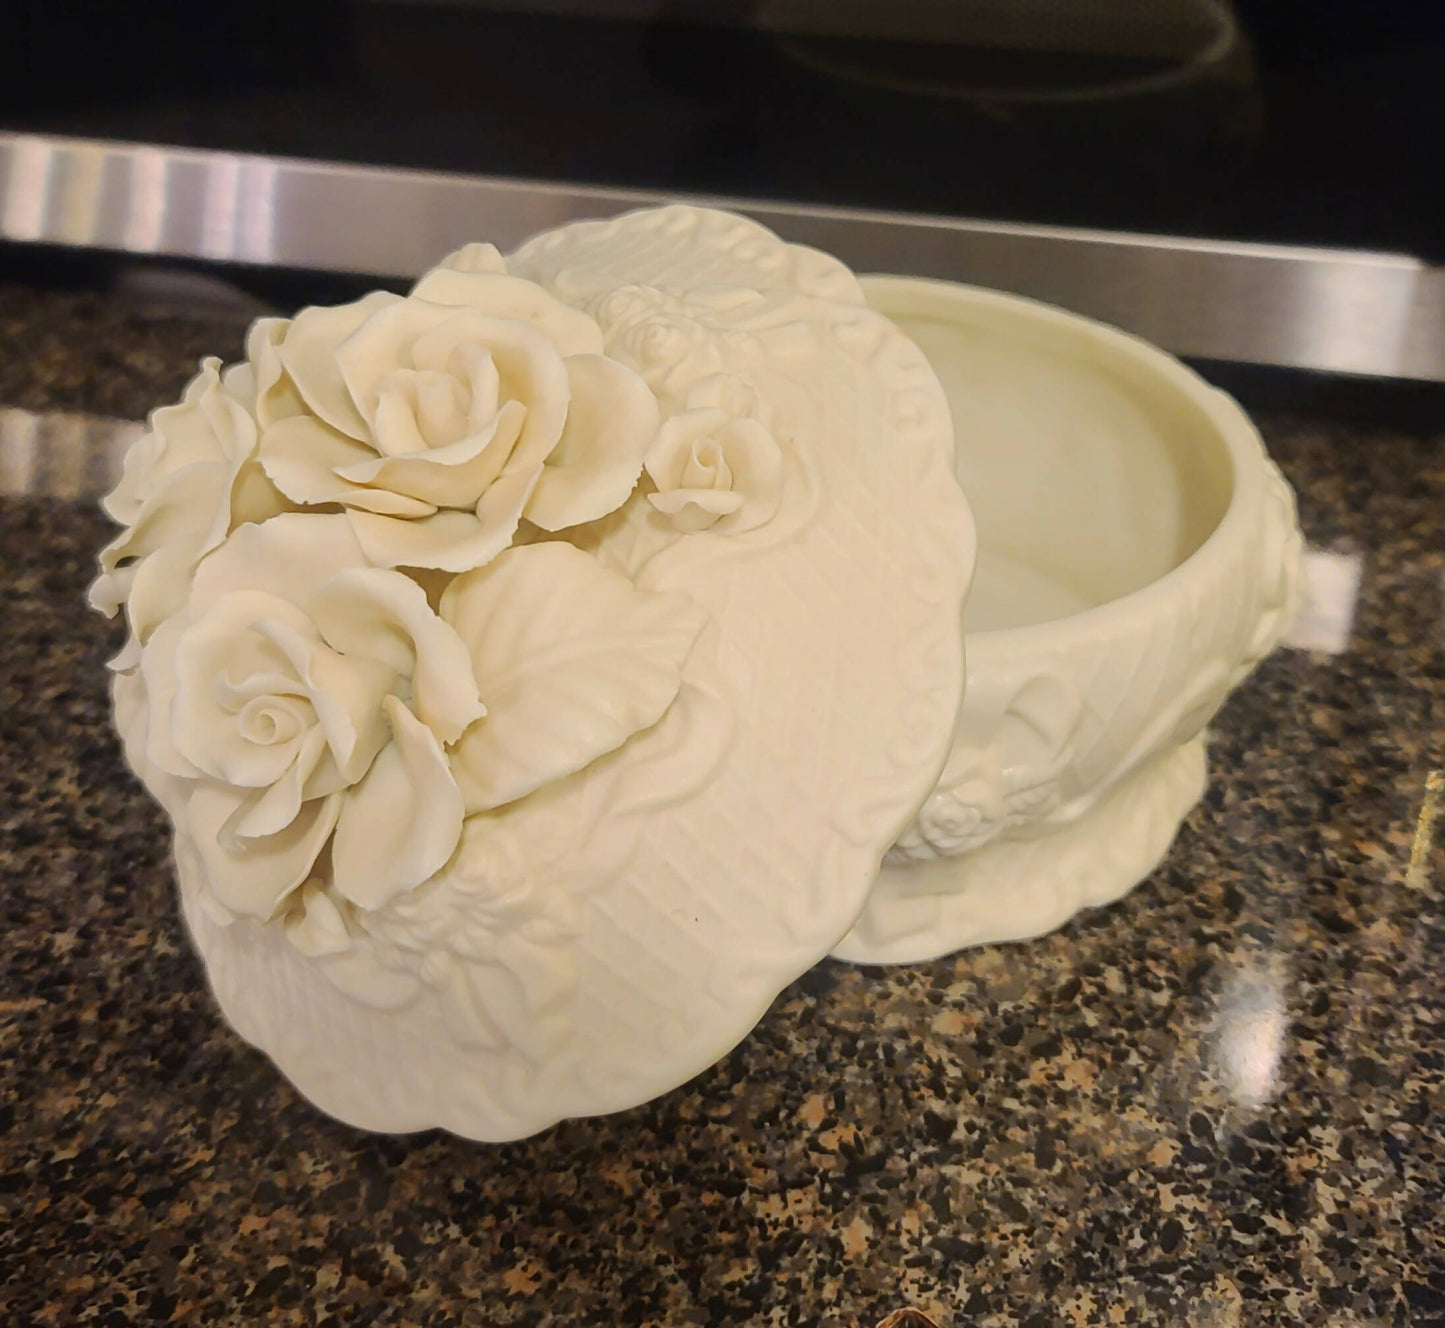 Ceramic Rose Dish - White